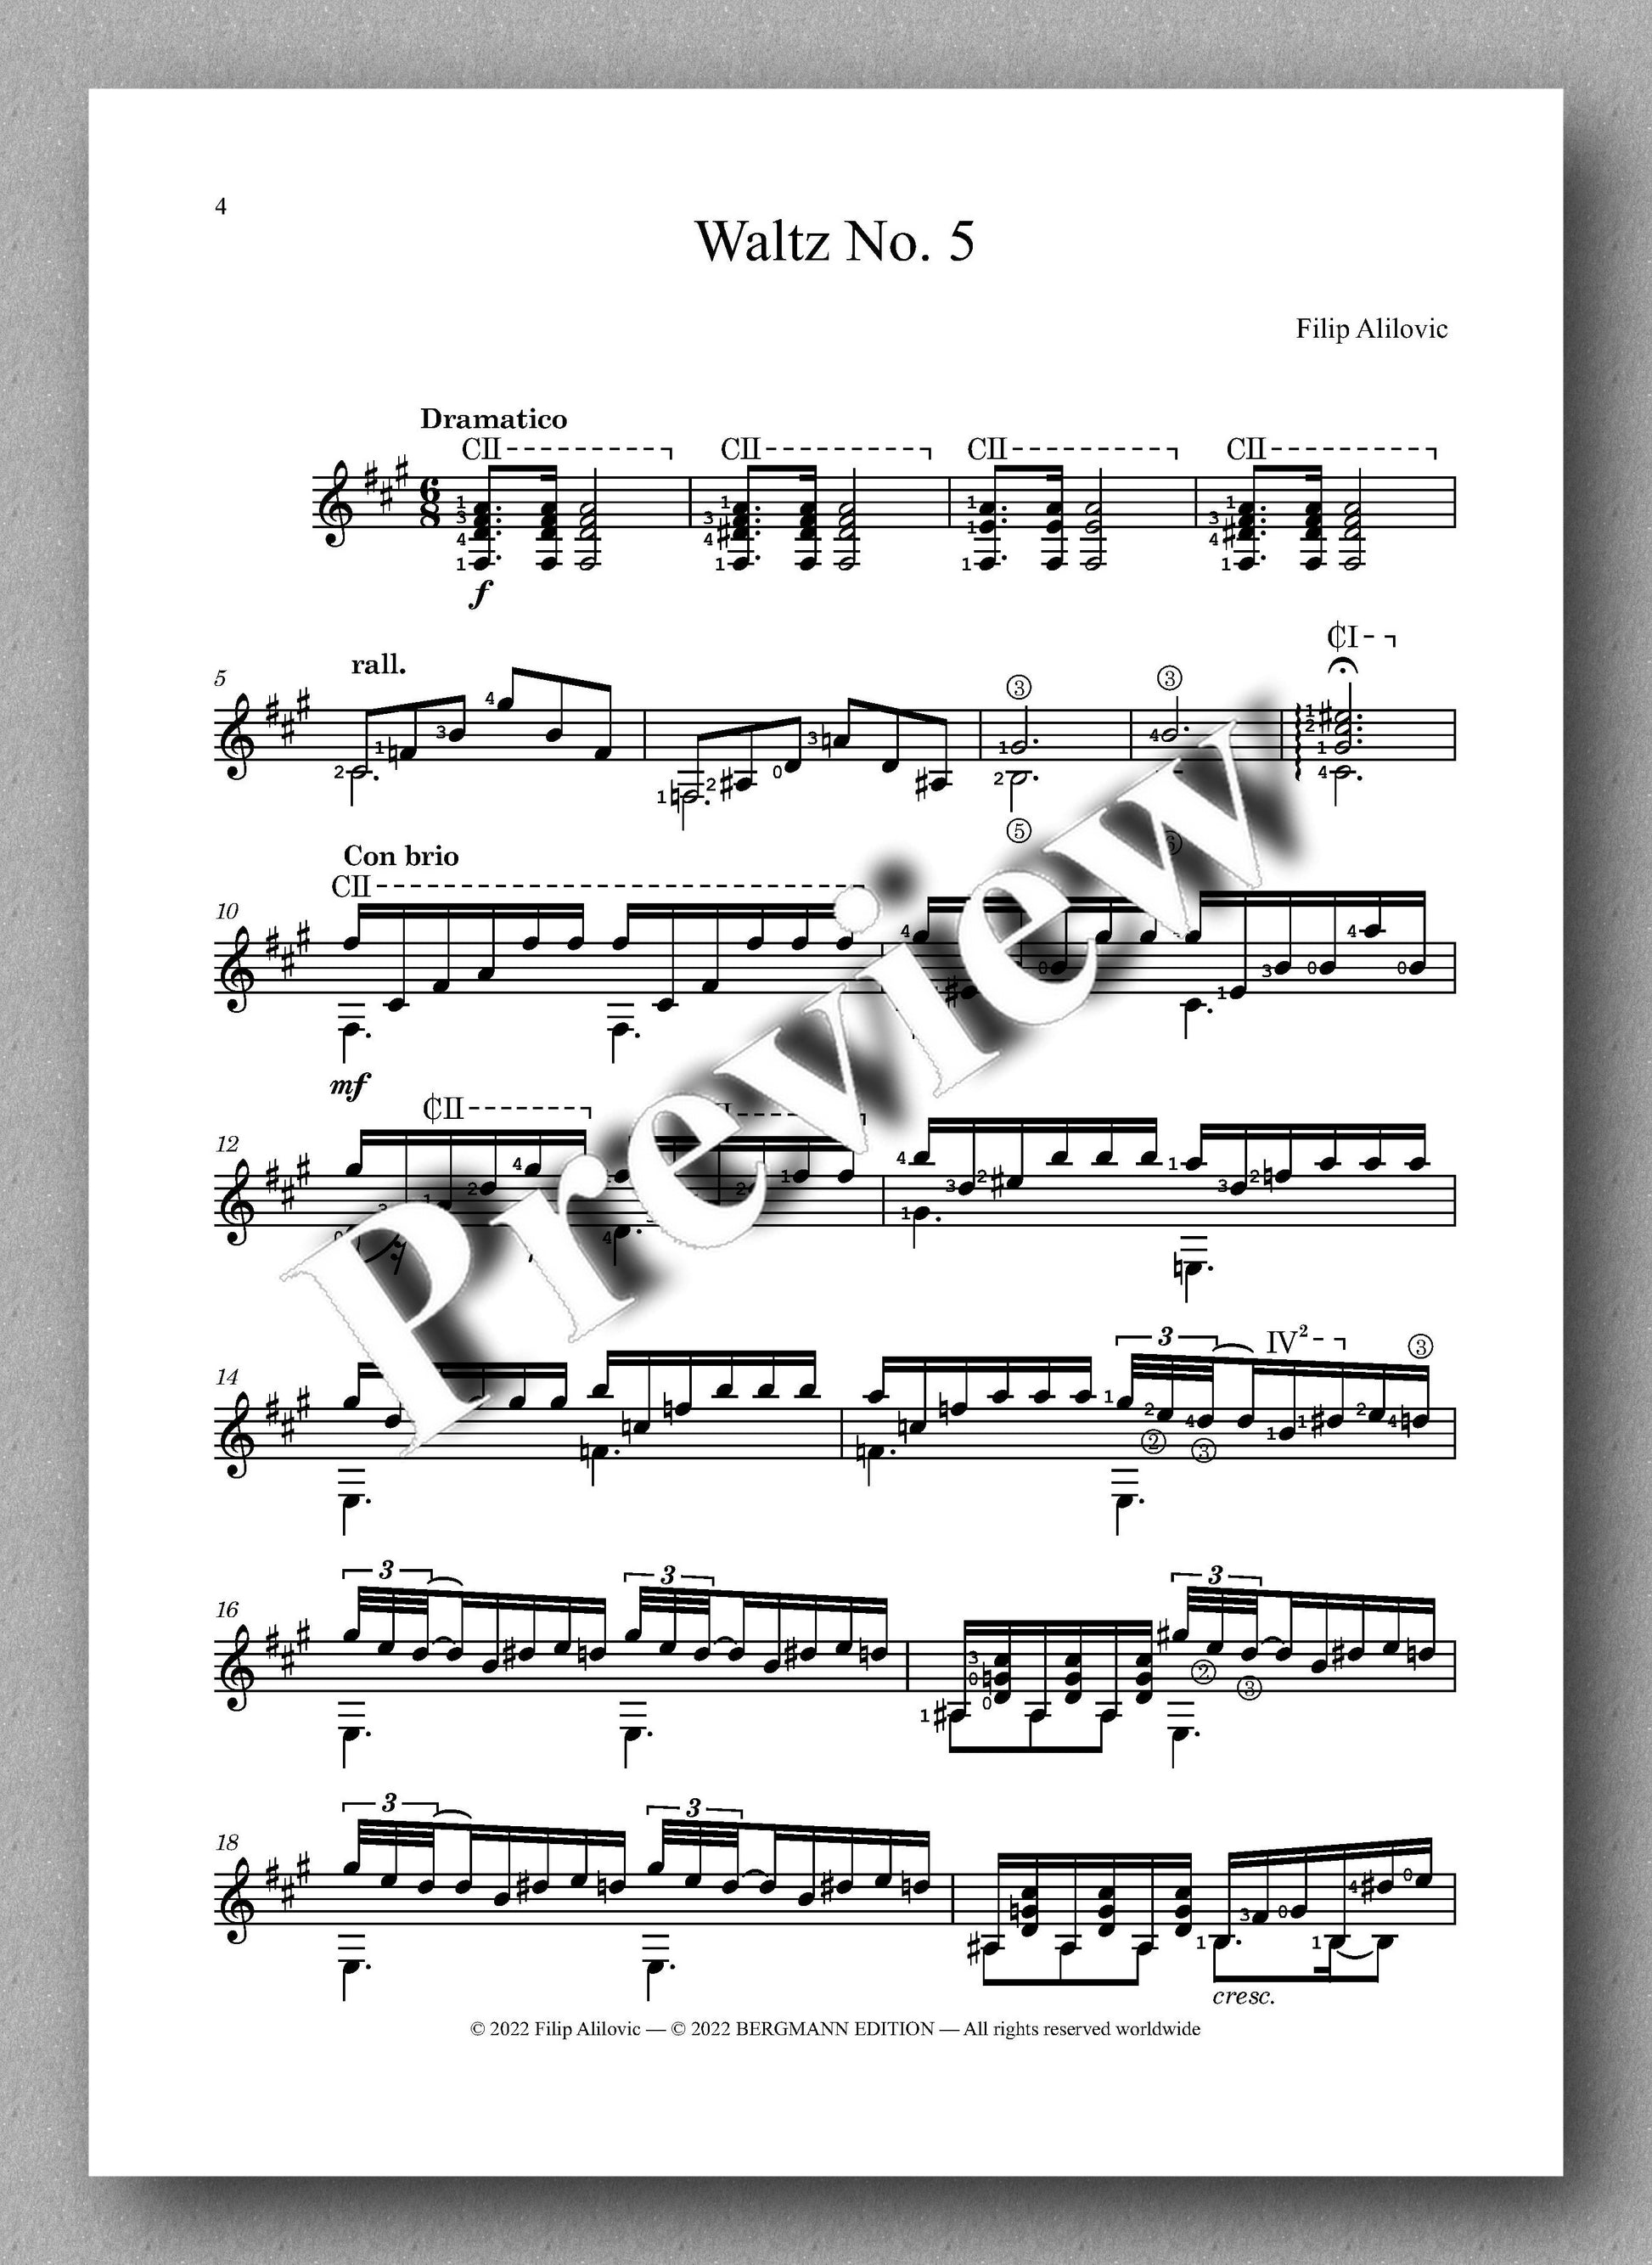 Alilovic, Waltz No. 5 - music score 1